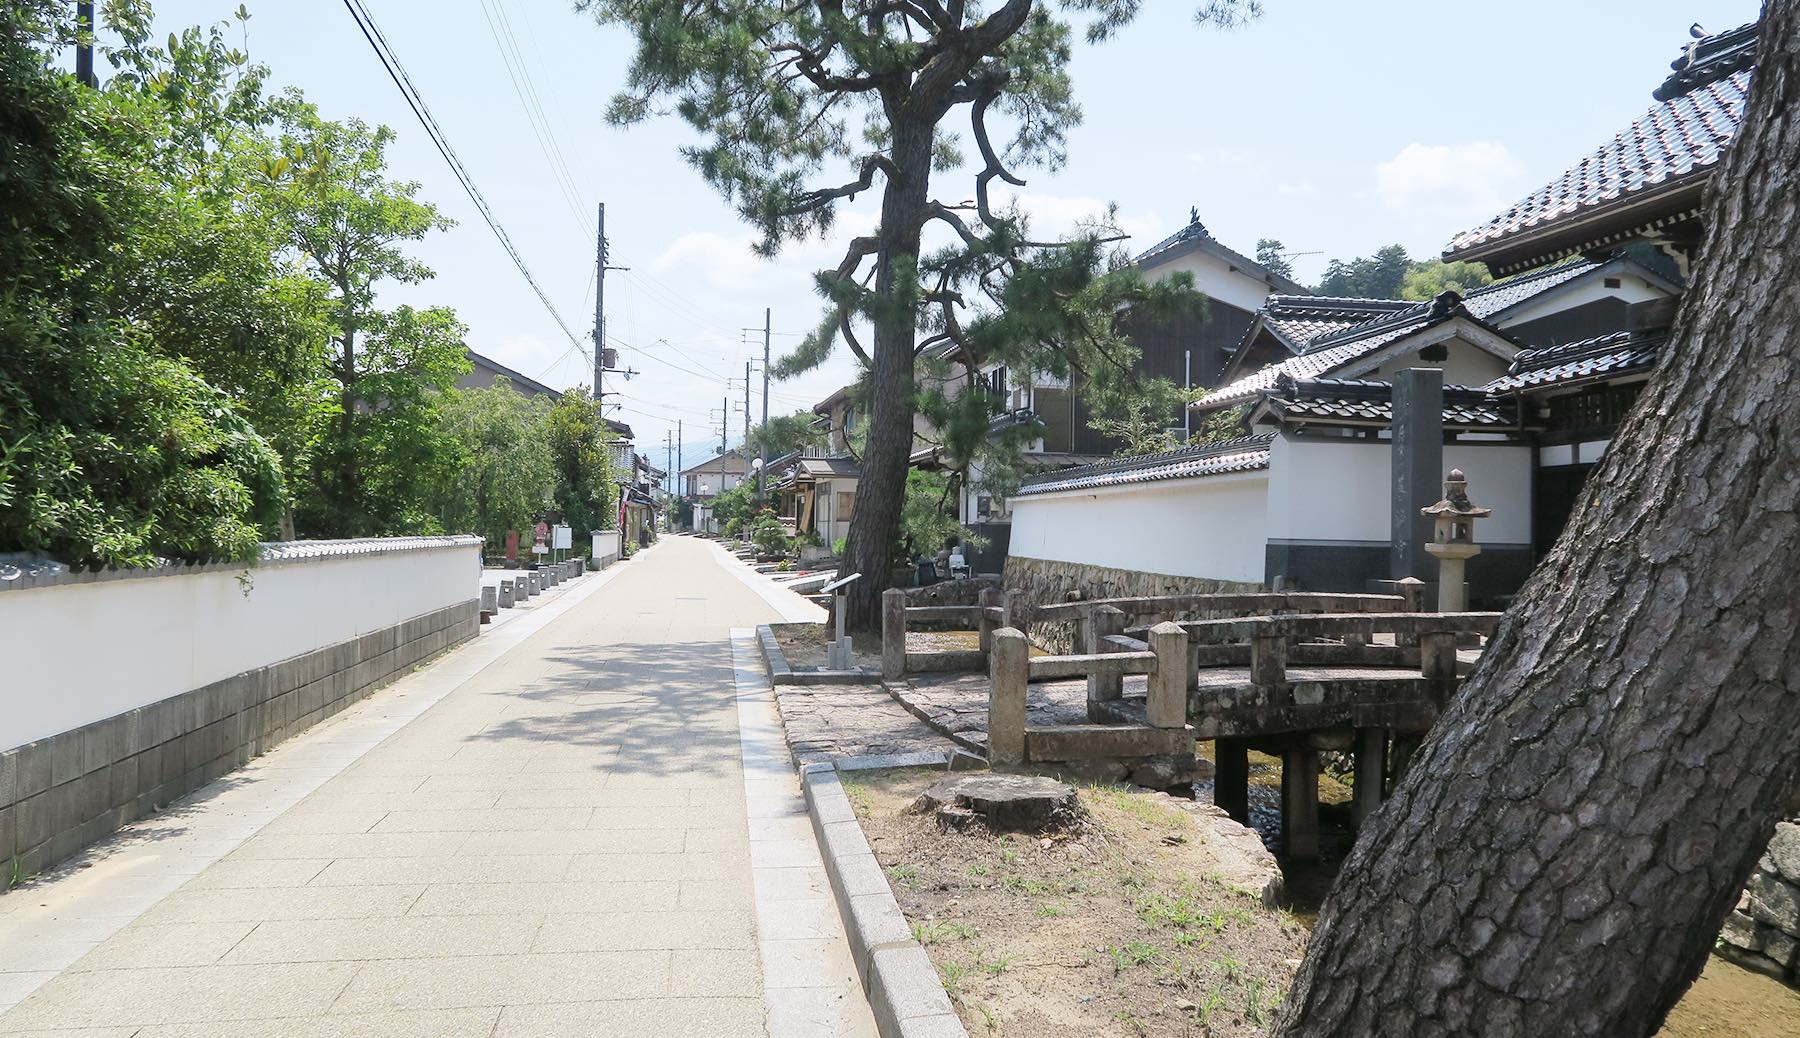 Takeda Townscape